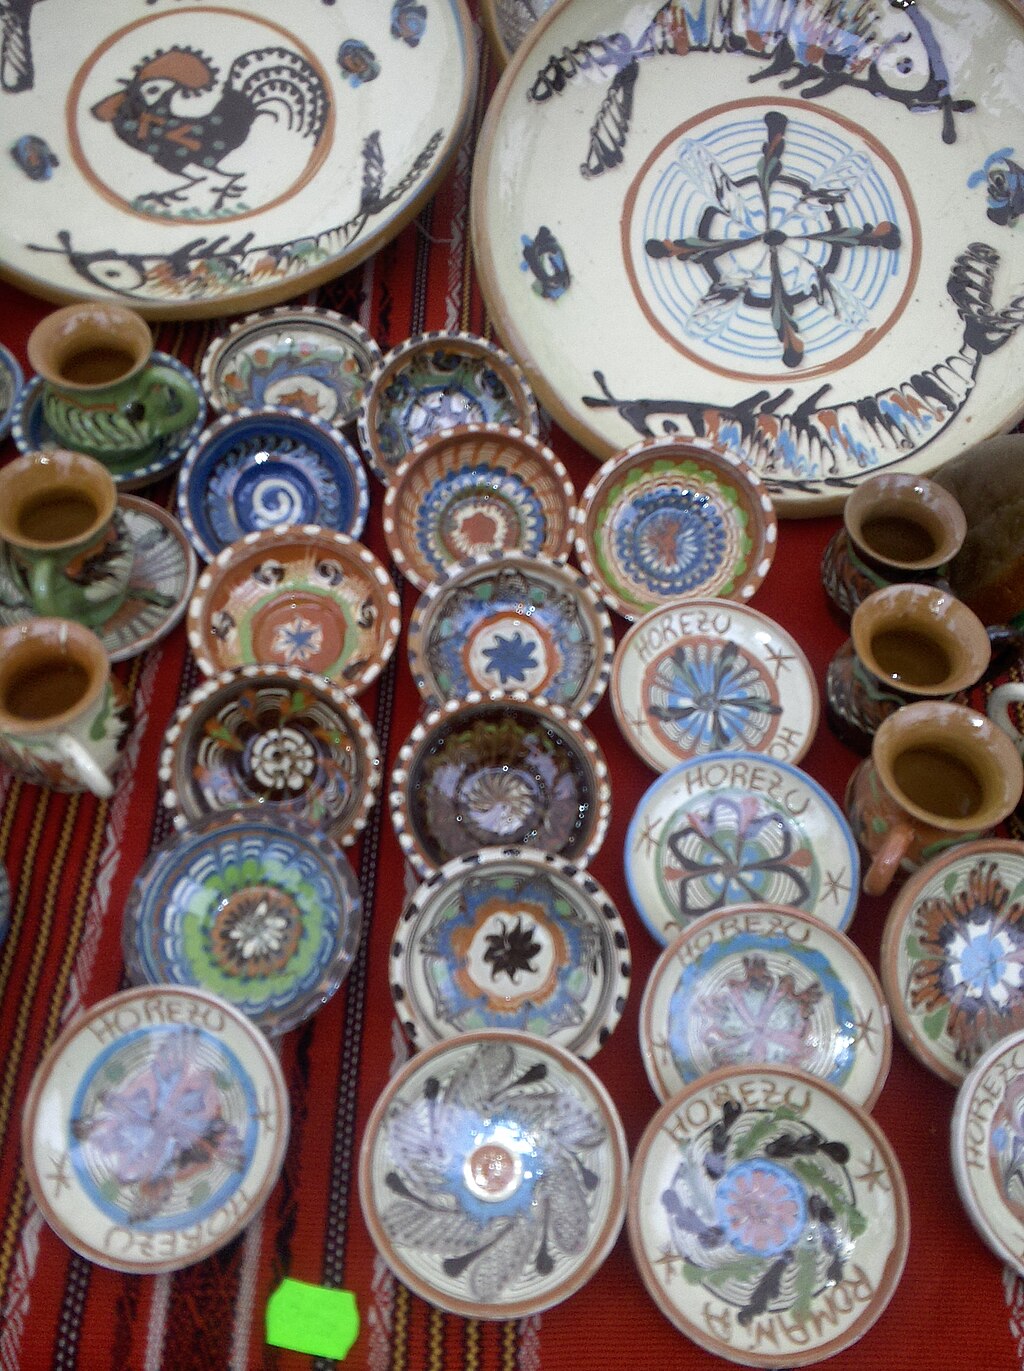 Horezu ceramics from Romania